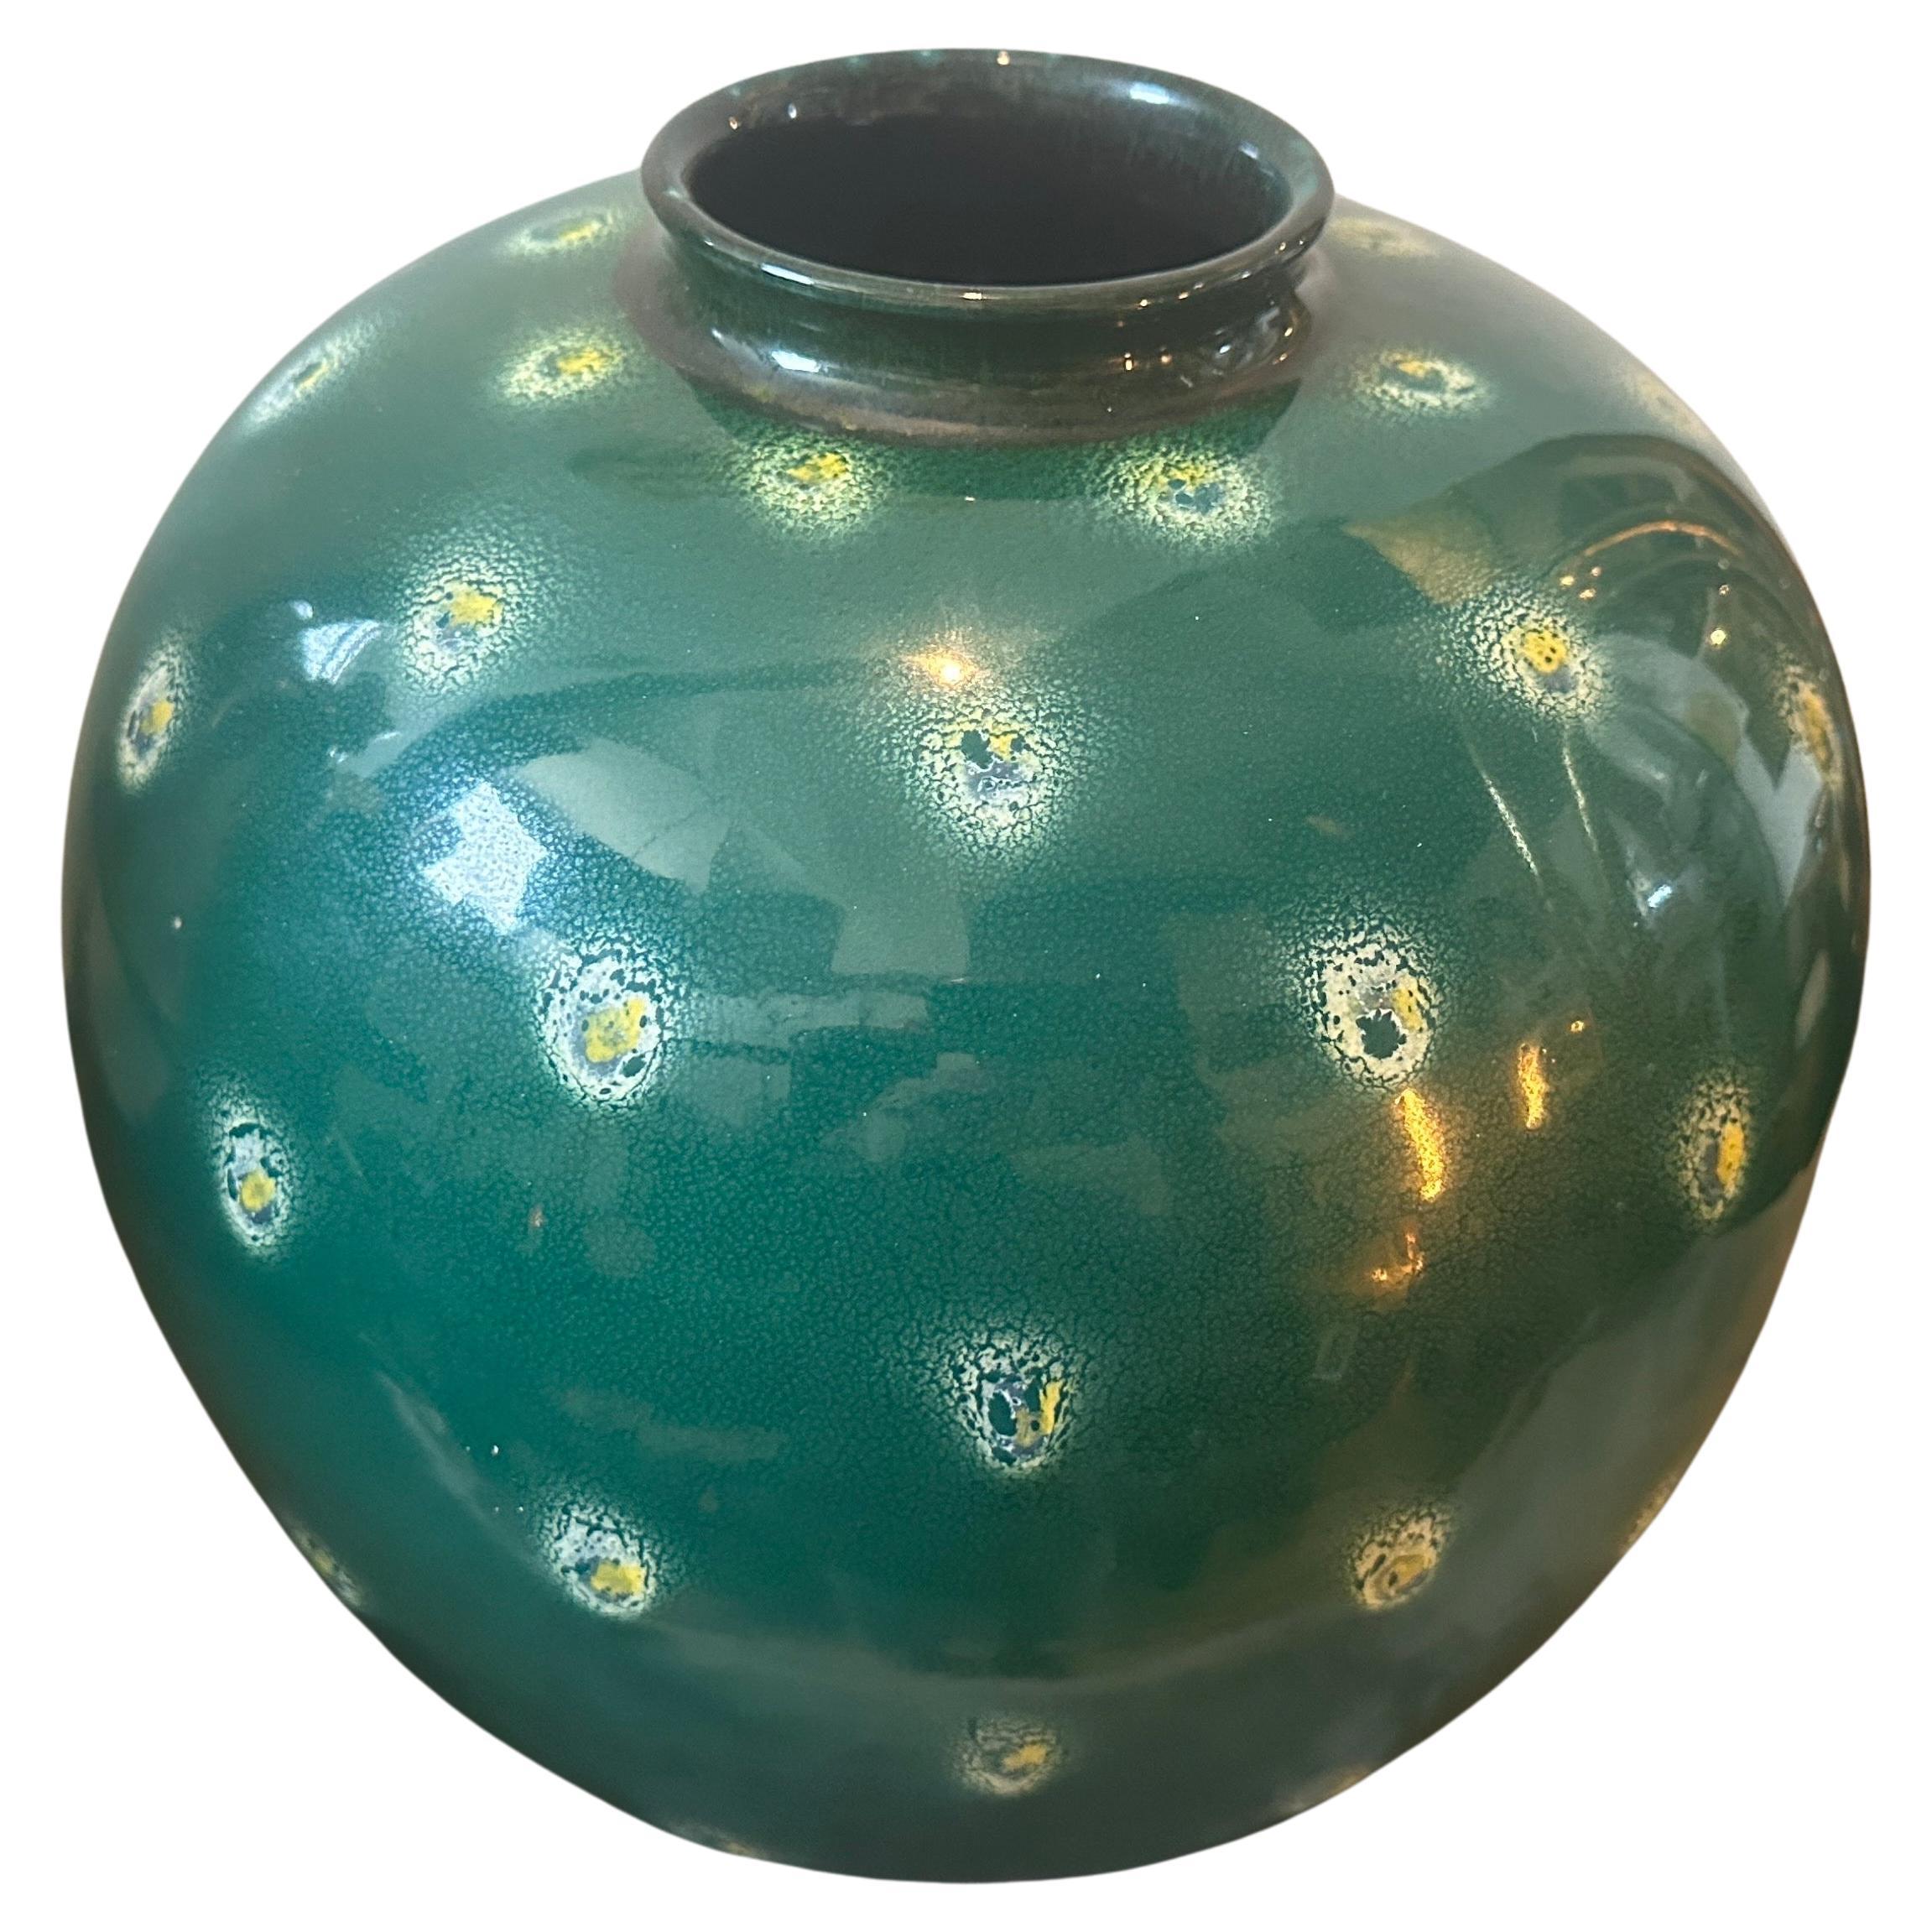 Un vase en céramique verte daté de 1955, conçu et fabriqué en Sicile dans la petite ville de Santo Stefano di Townes, célèbre pour ses céramiques artisanales. Certains objets de l'époque ont été influencés par Gio Ponti. Le vase est un exemple